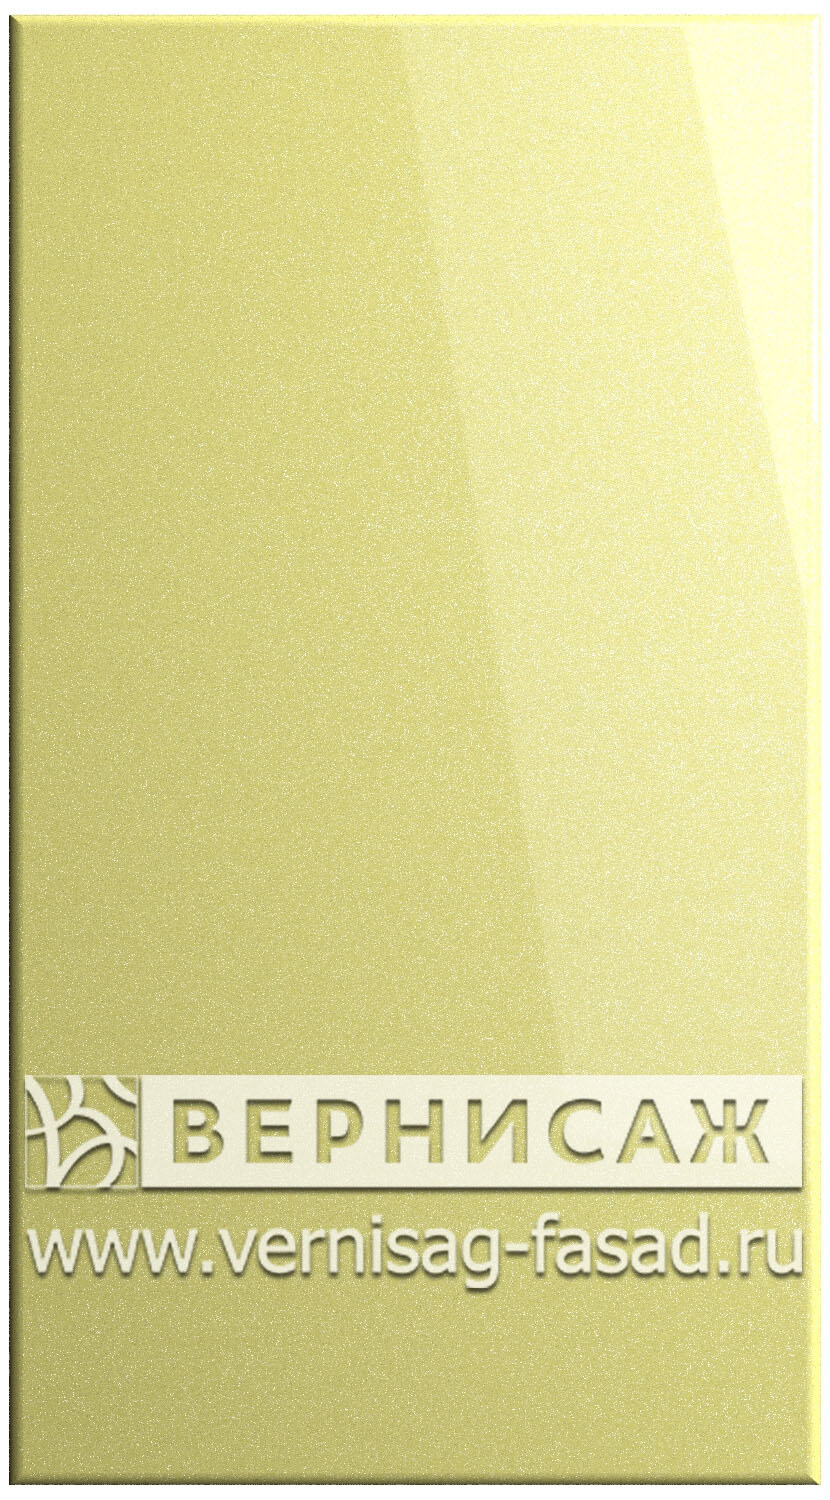 Фасады в пленке ПВХ, Фрезеровка № 15, цвет Светло - желтый металлик